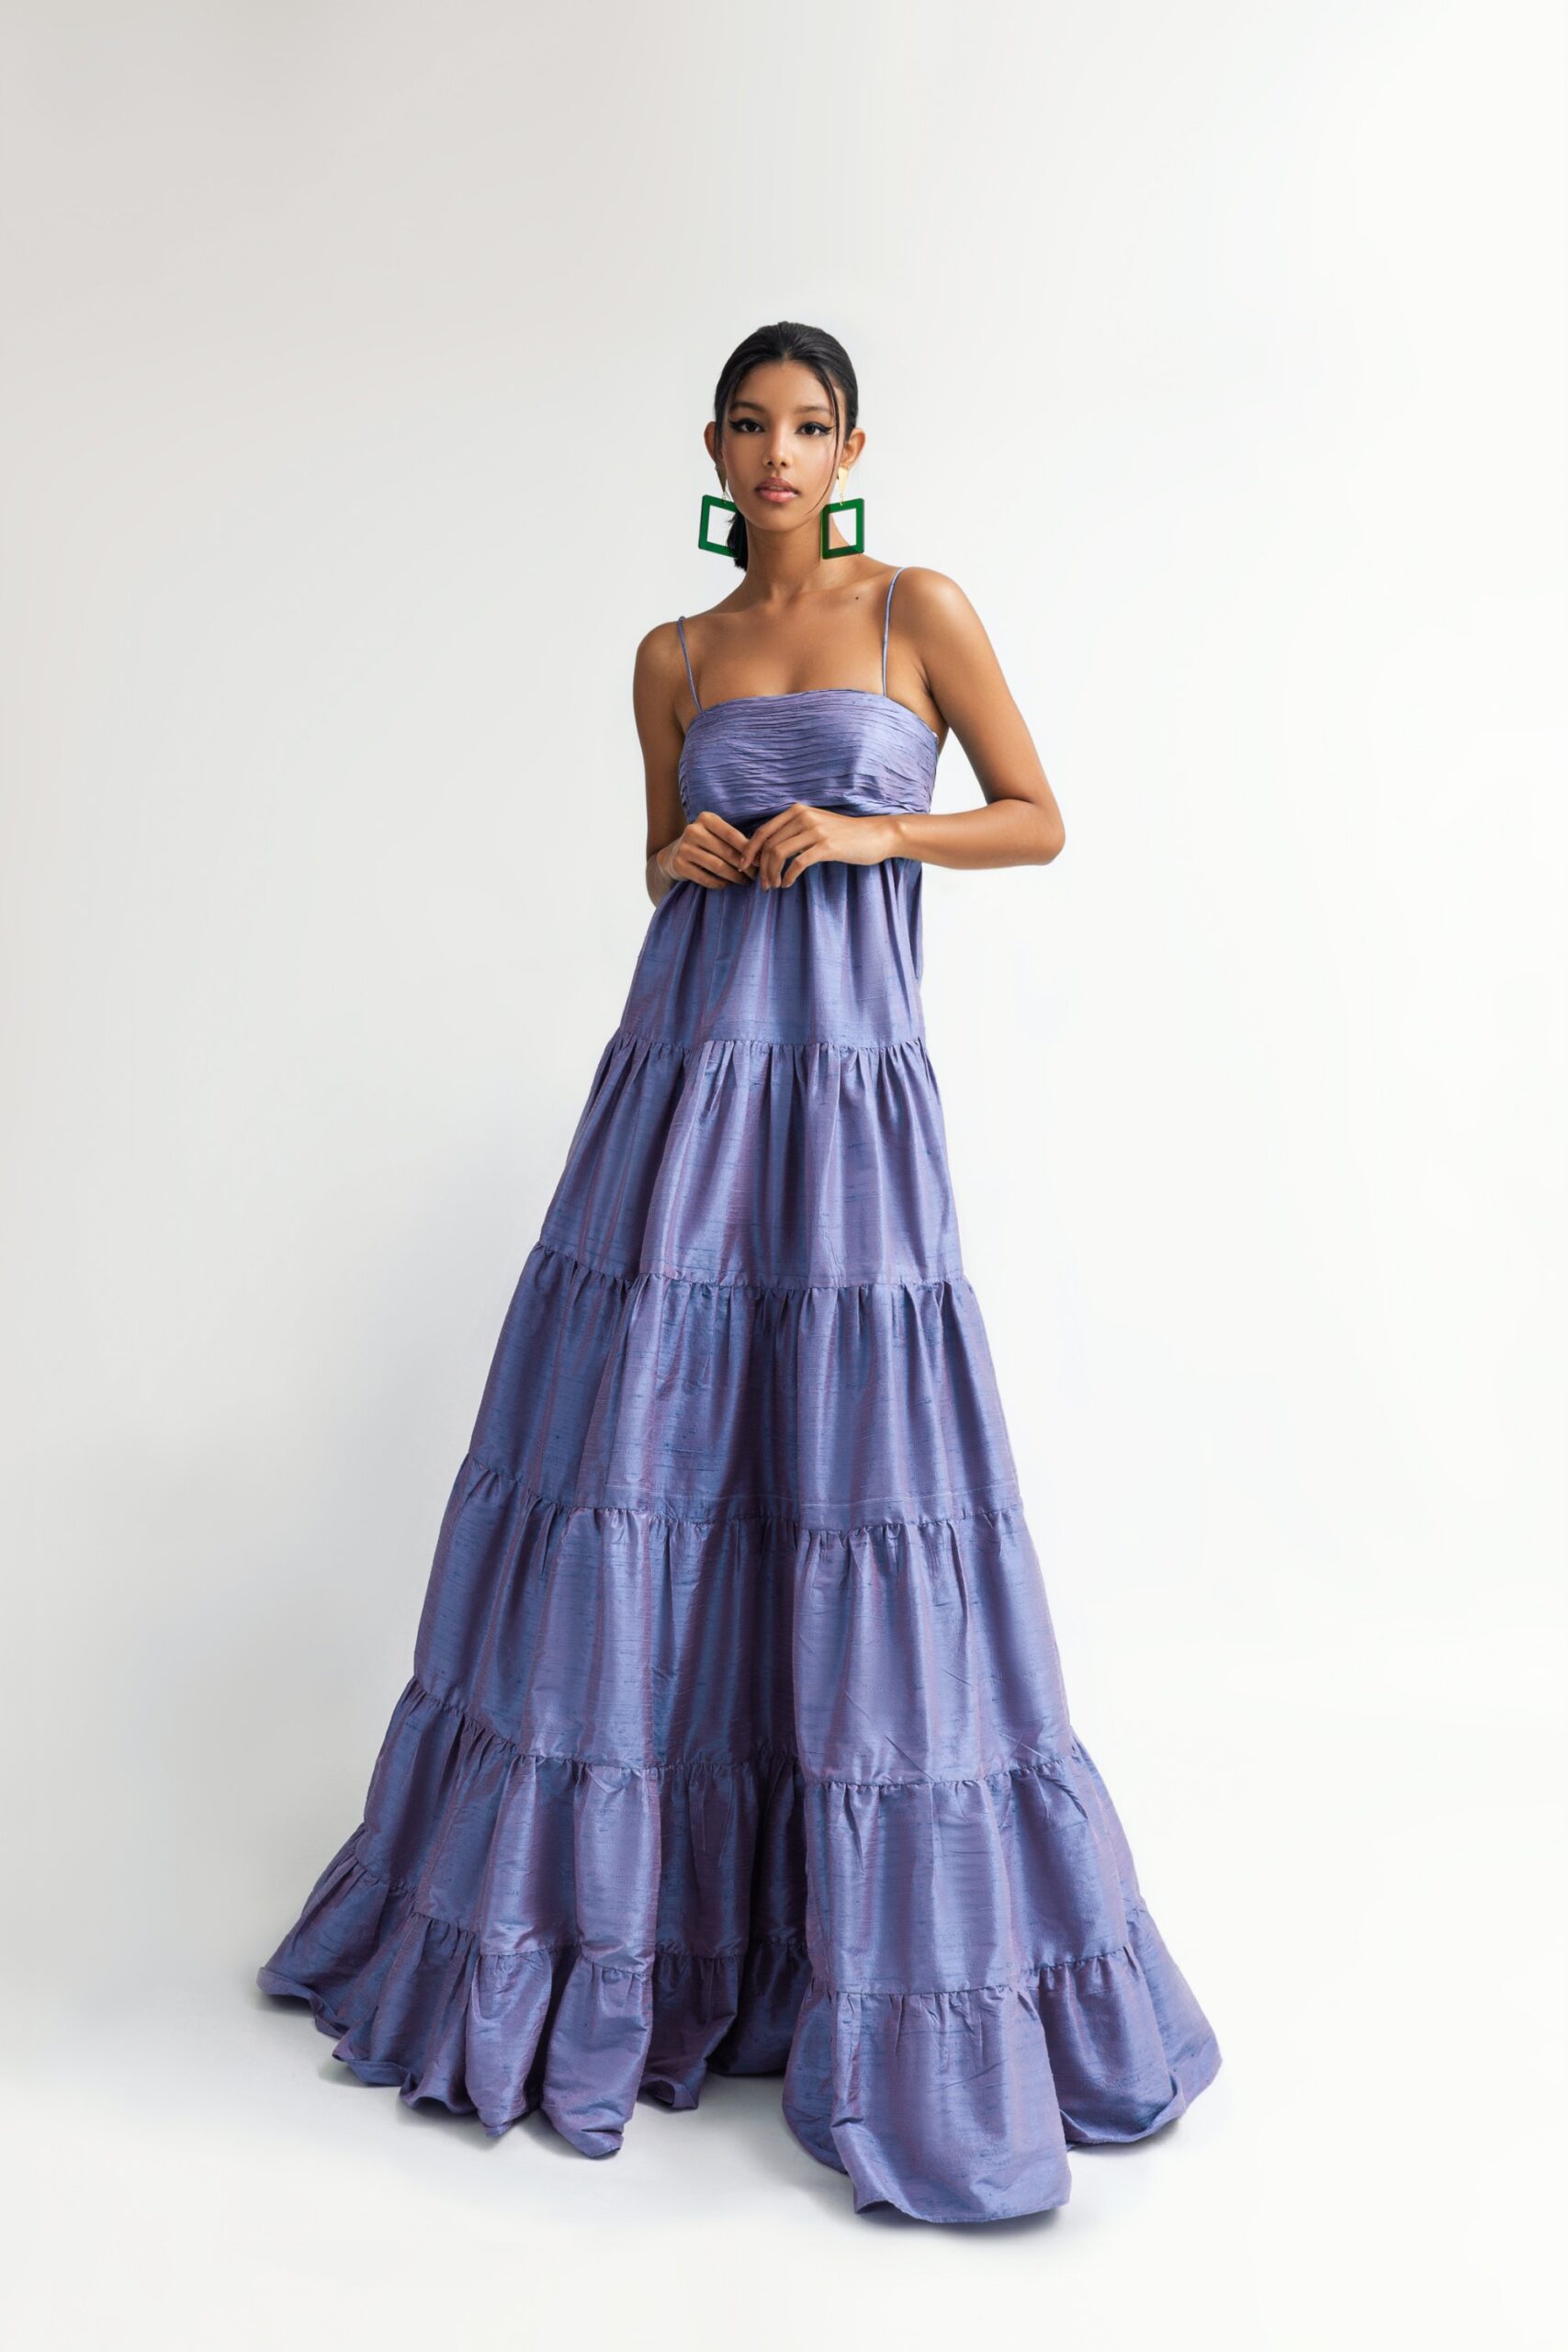 Frida Dress - Alitza García | Official online store